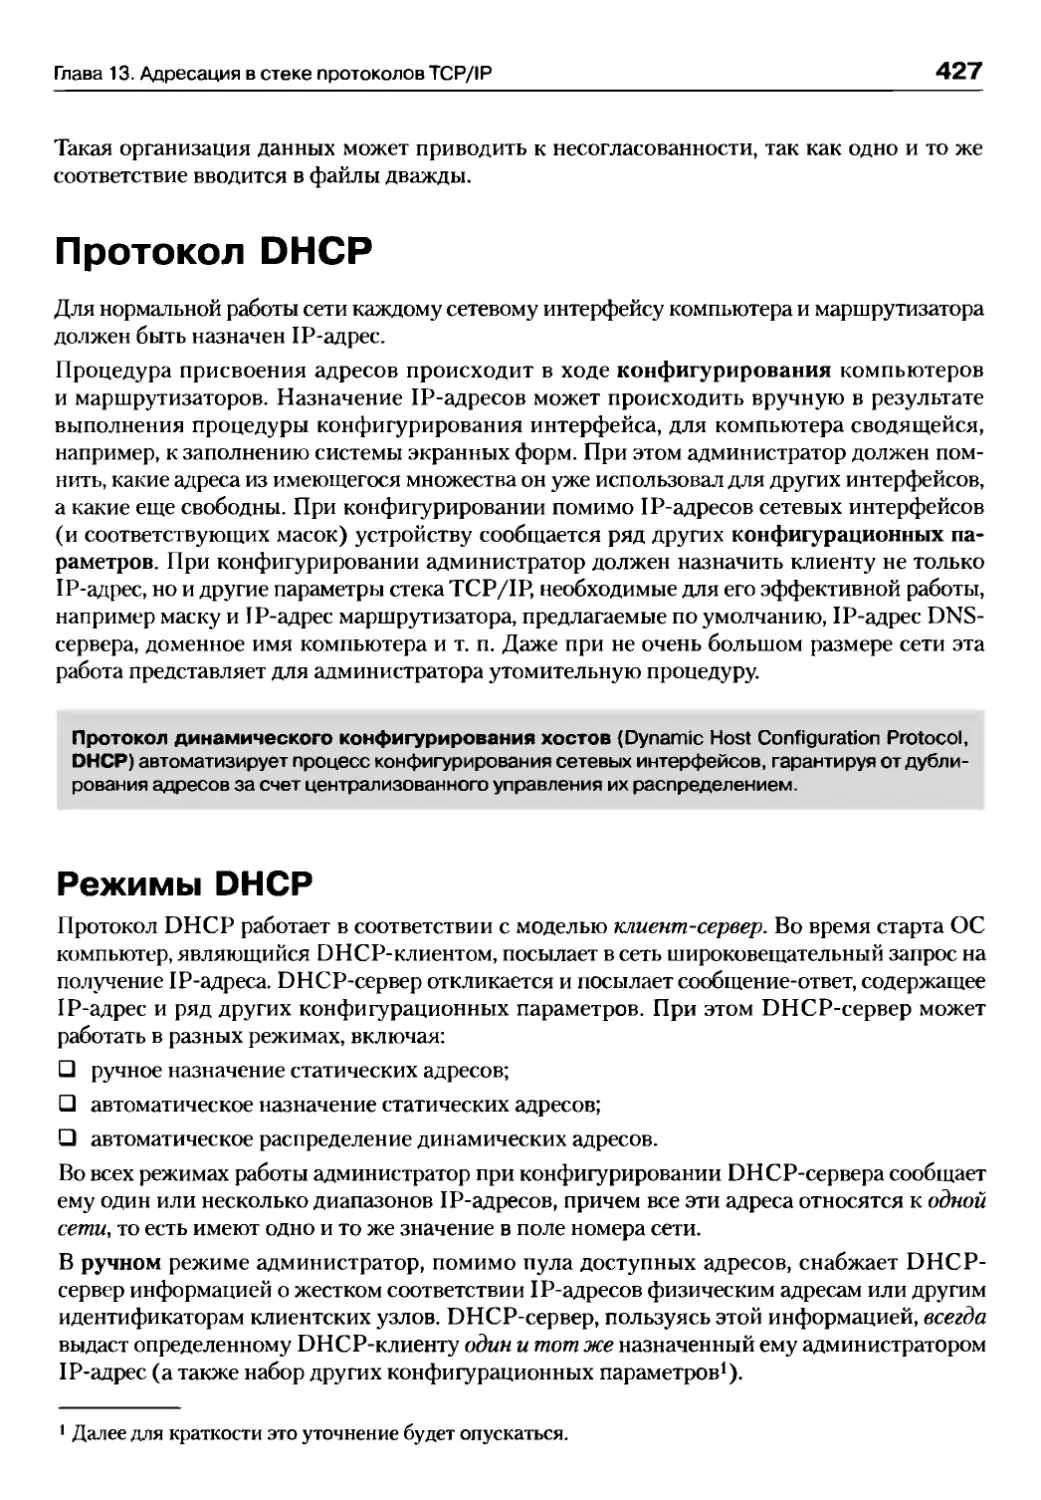 Протокол DHCP